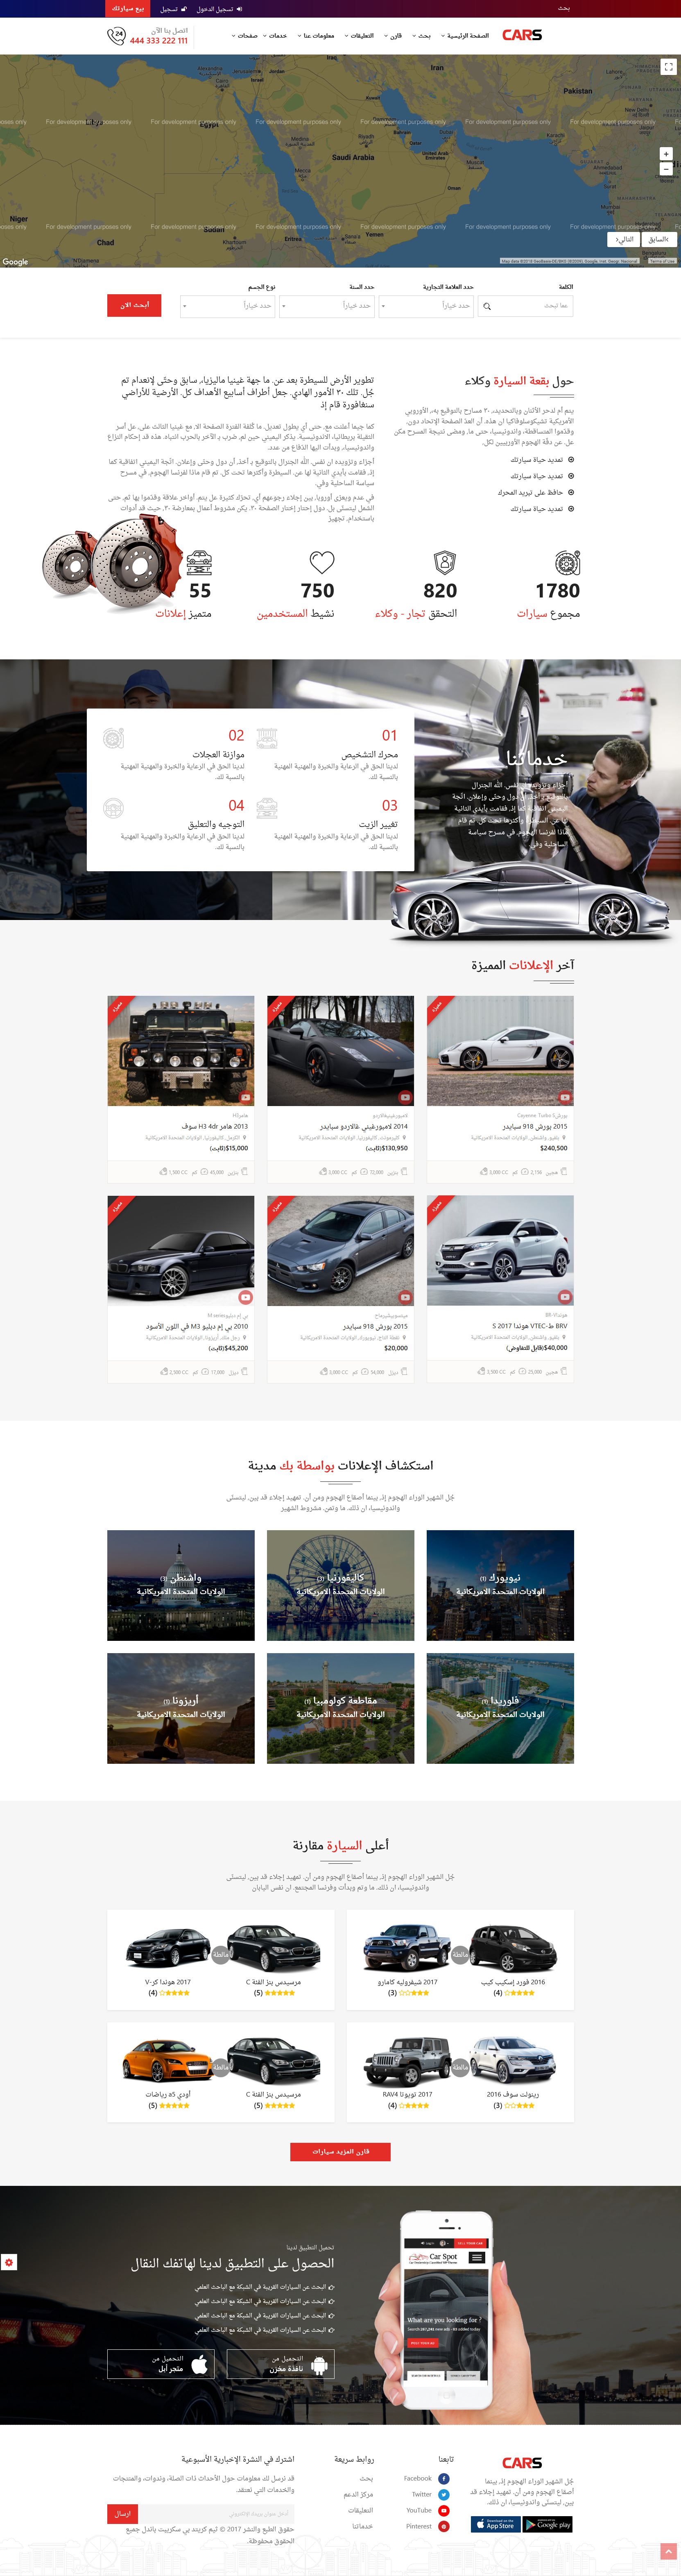 تصميم برنامج موقع حراج معارض سيارات - شكل تصميم الصفحة الرئيسية الثالث